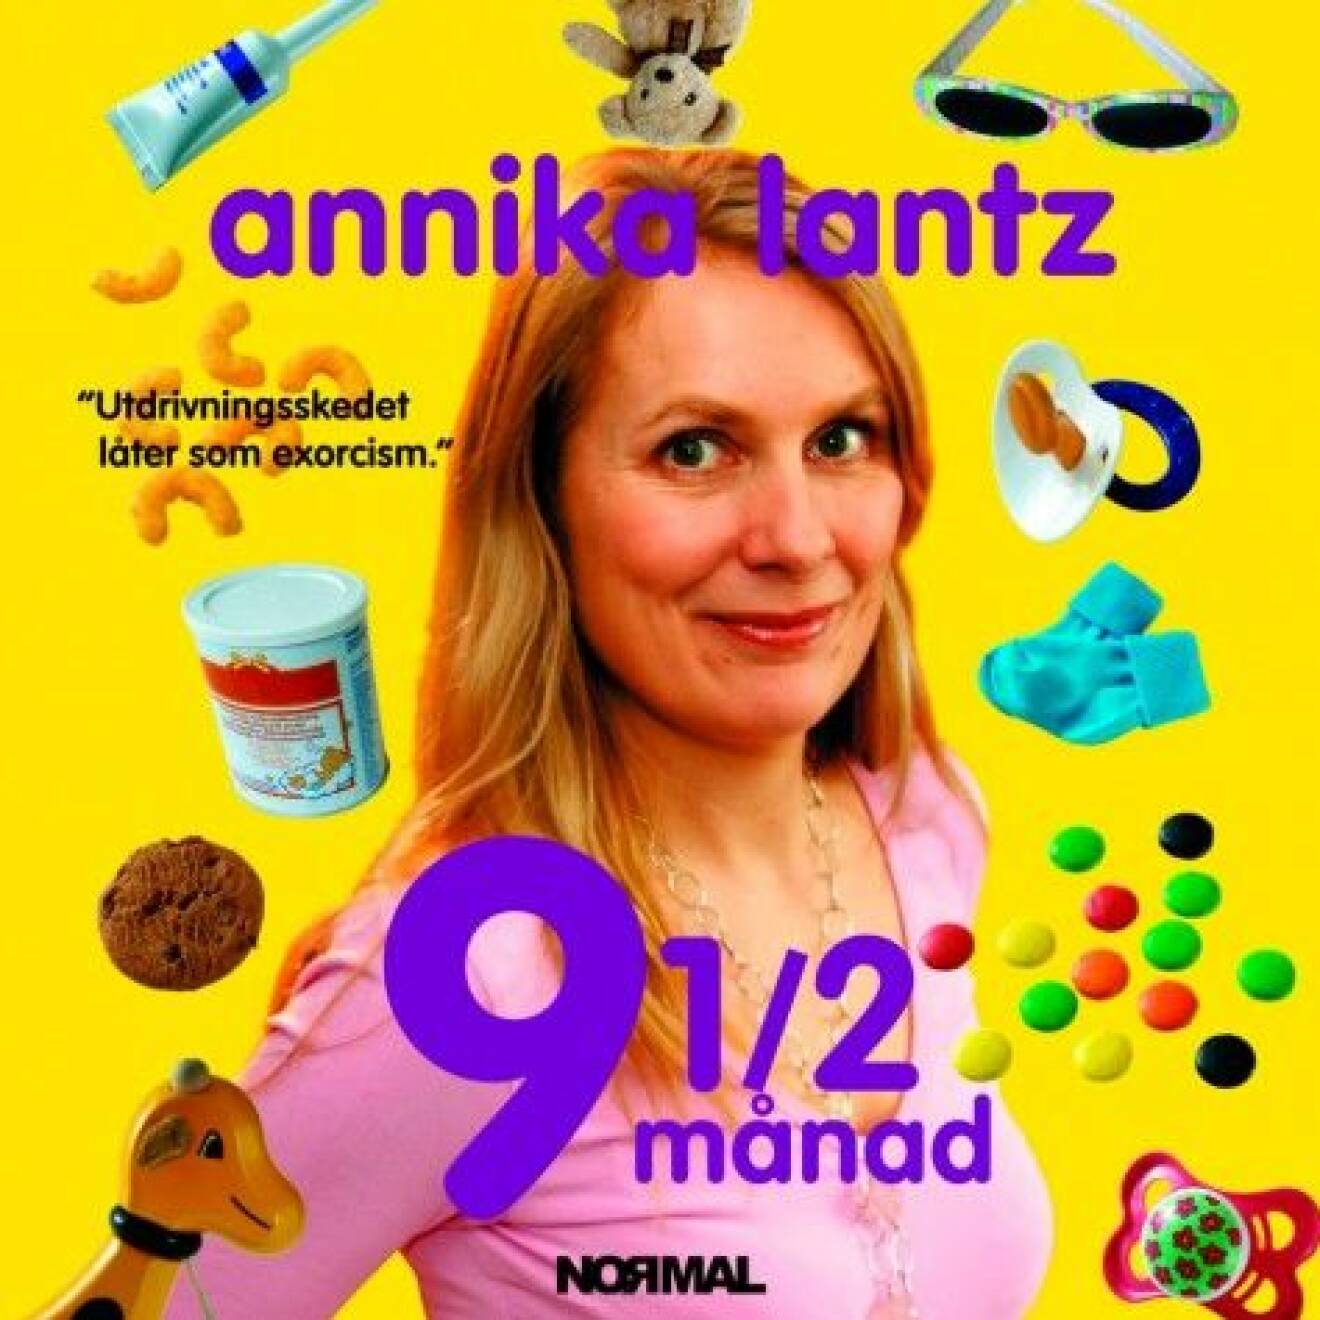 9½ månad av Annika Lantz (Akvedukt).